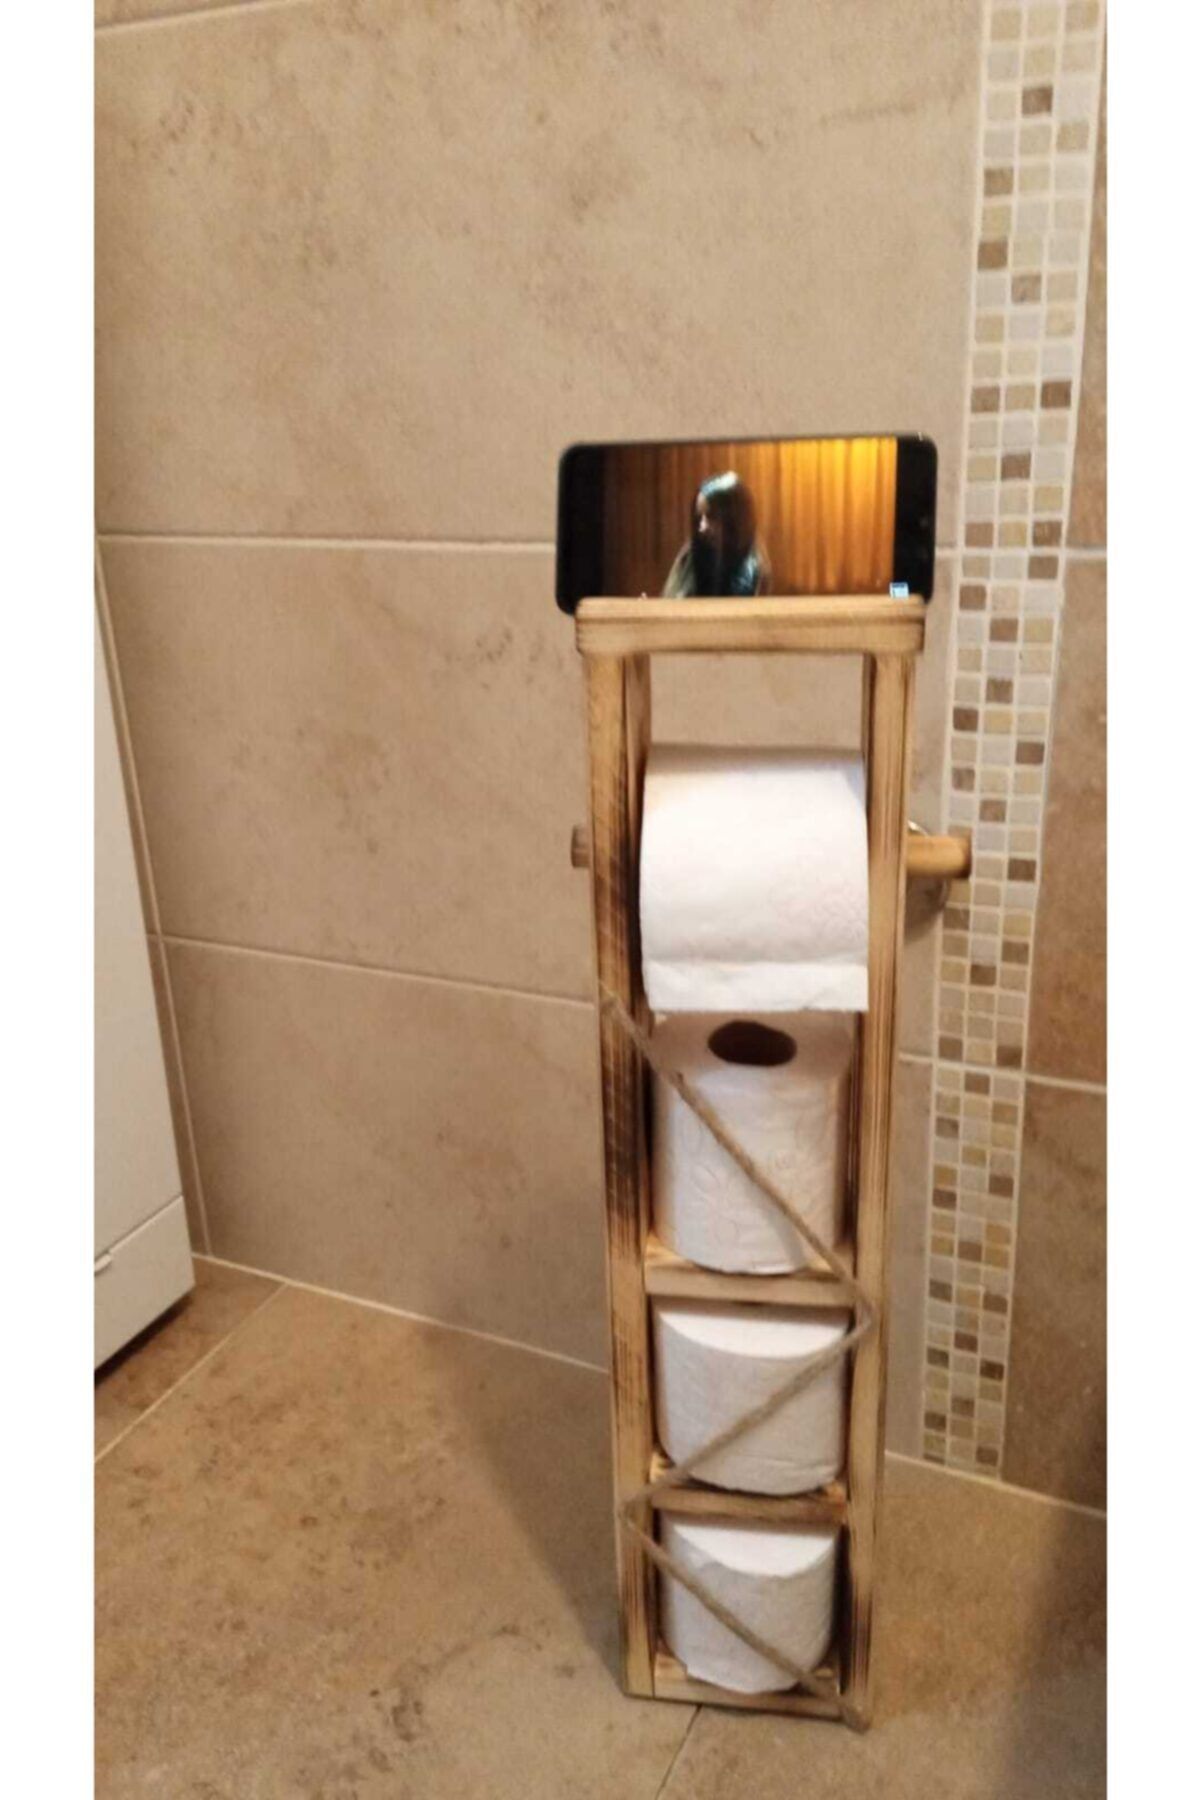 Ankaflex Ahşap Wc Kağıtlık Tuvalet Telefon Tutucu Standı Özellikli Banyo Kağıtlık